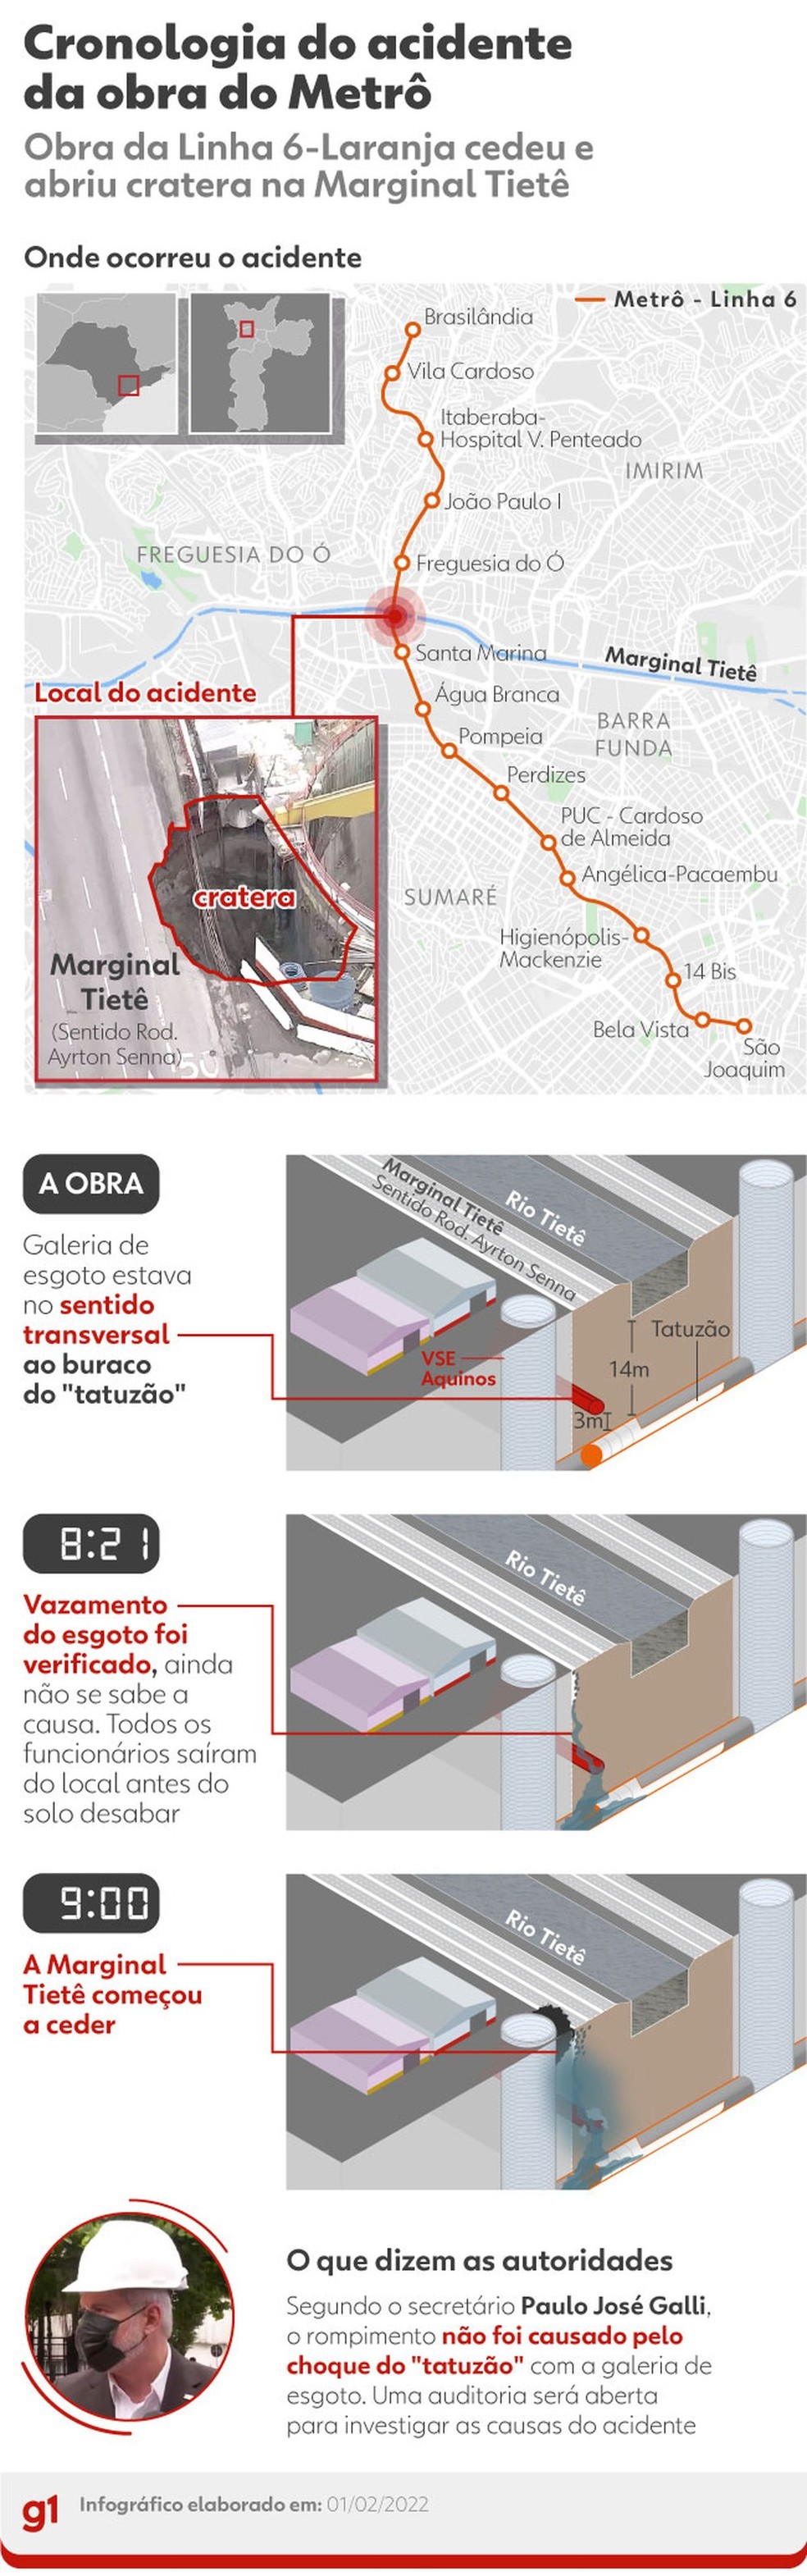 nfográfico mostra como ocorreu o desabamento em obra do metrô de São Paulo — Foto: Editoria de arte/g1